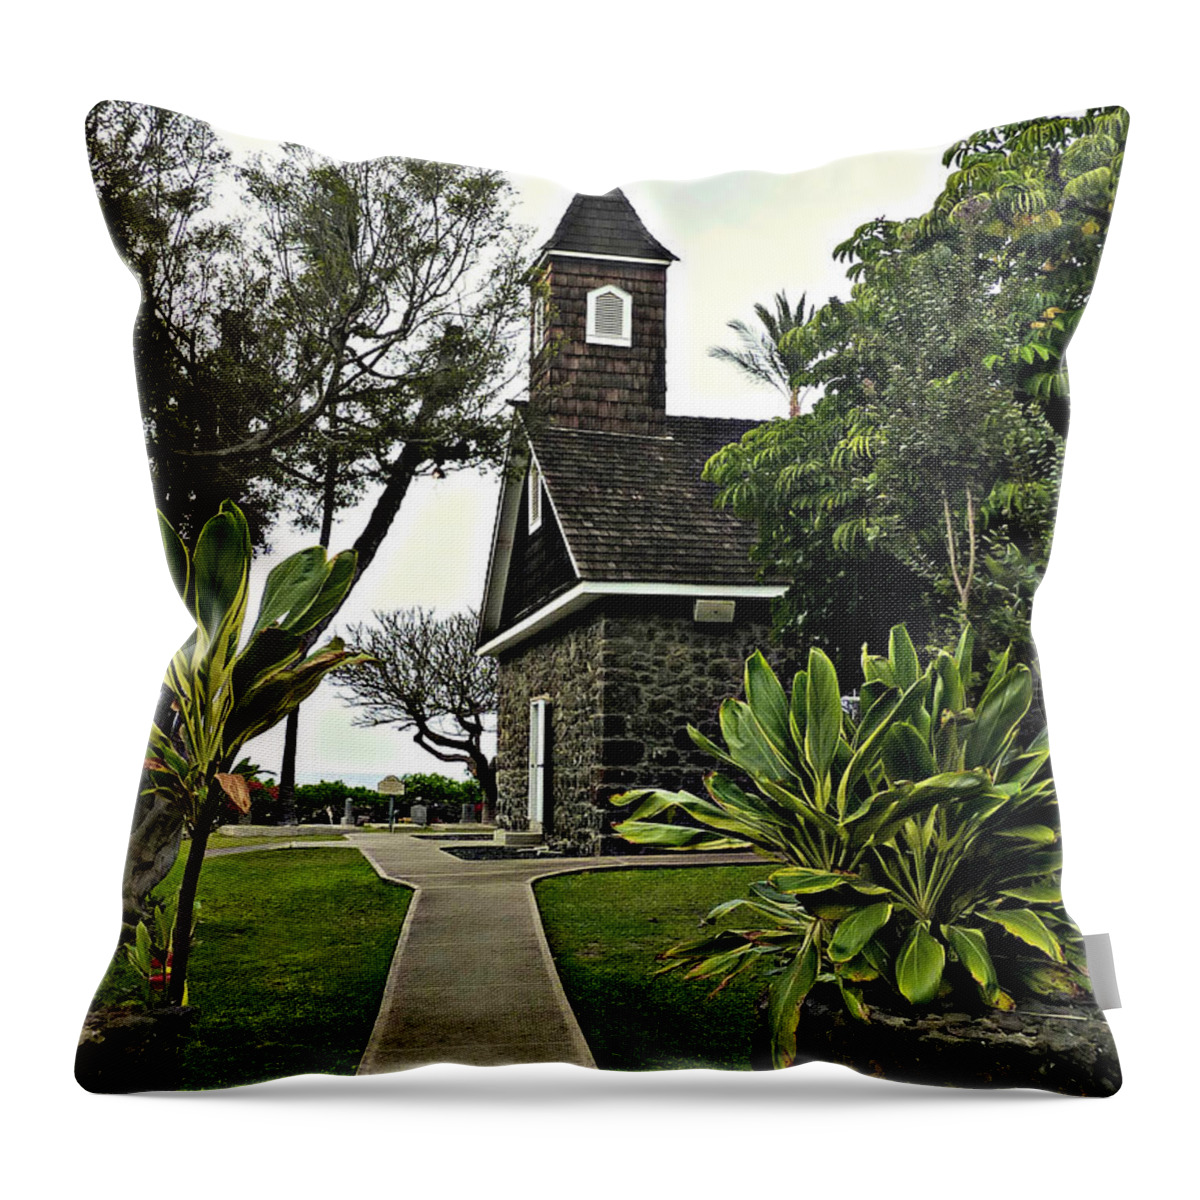 Hawaii Throw Pillow featuring the photograph Keawala'i Congregational Church by Jo Sheehan